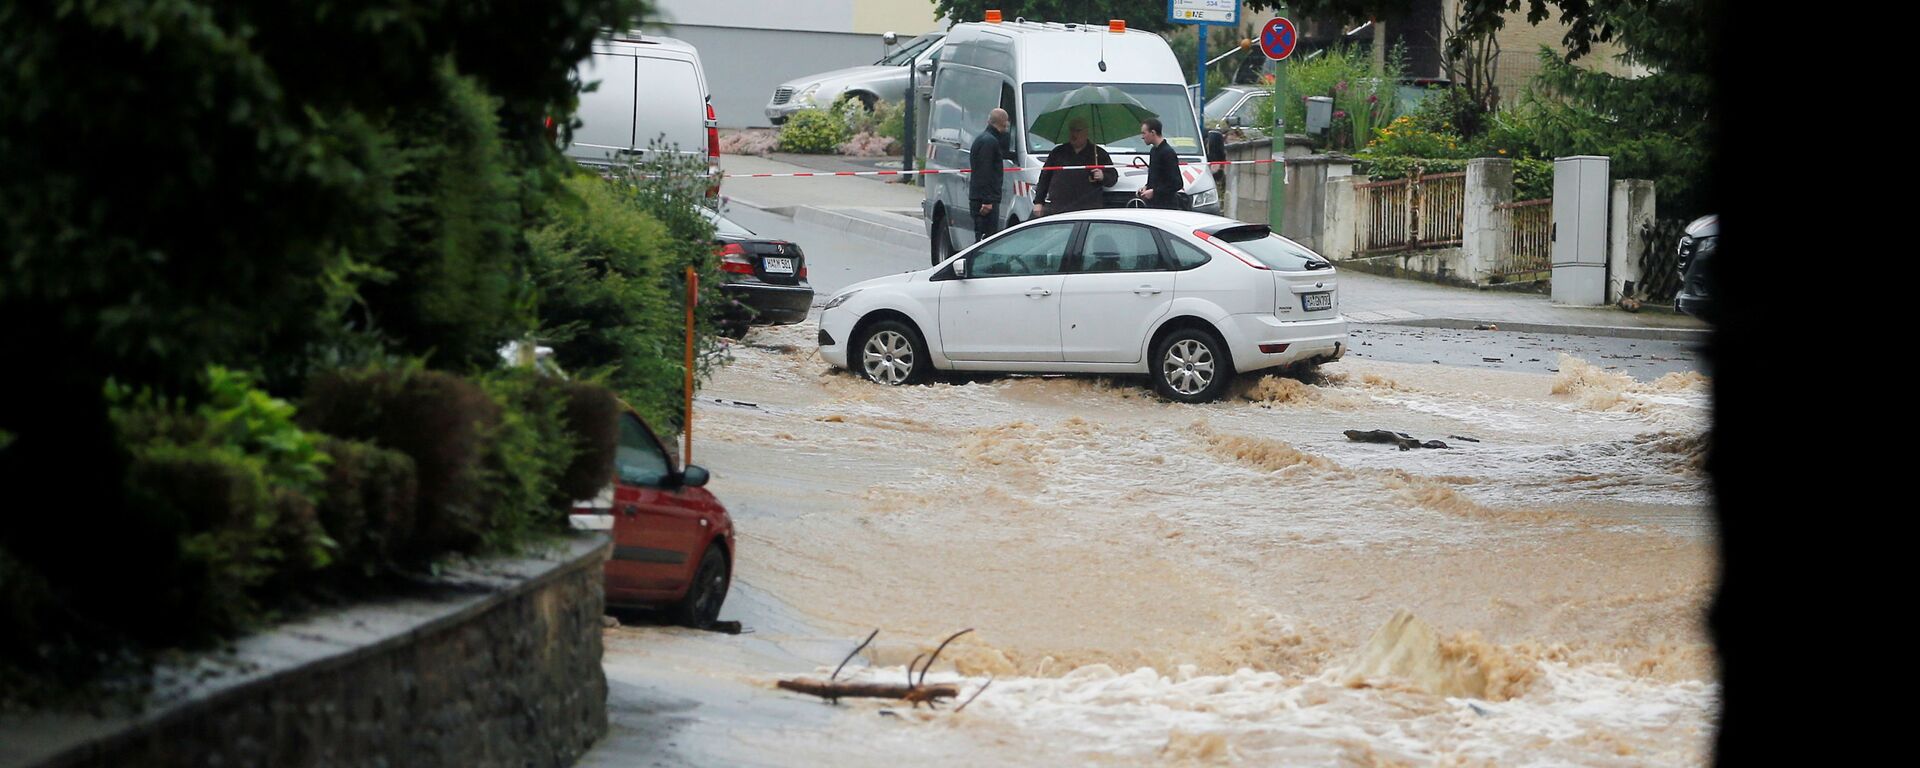 Затопленная улица после проливных дождей в Хагене, Германия  - Sputnik Молдова, 1920, 16.07.2021